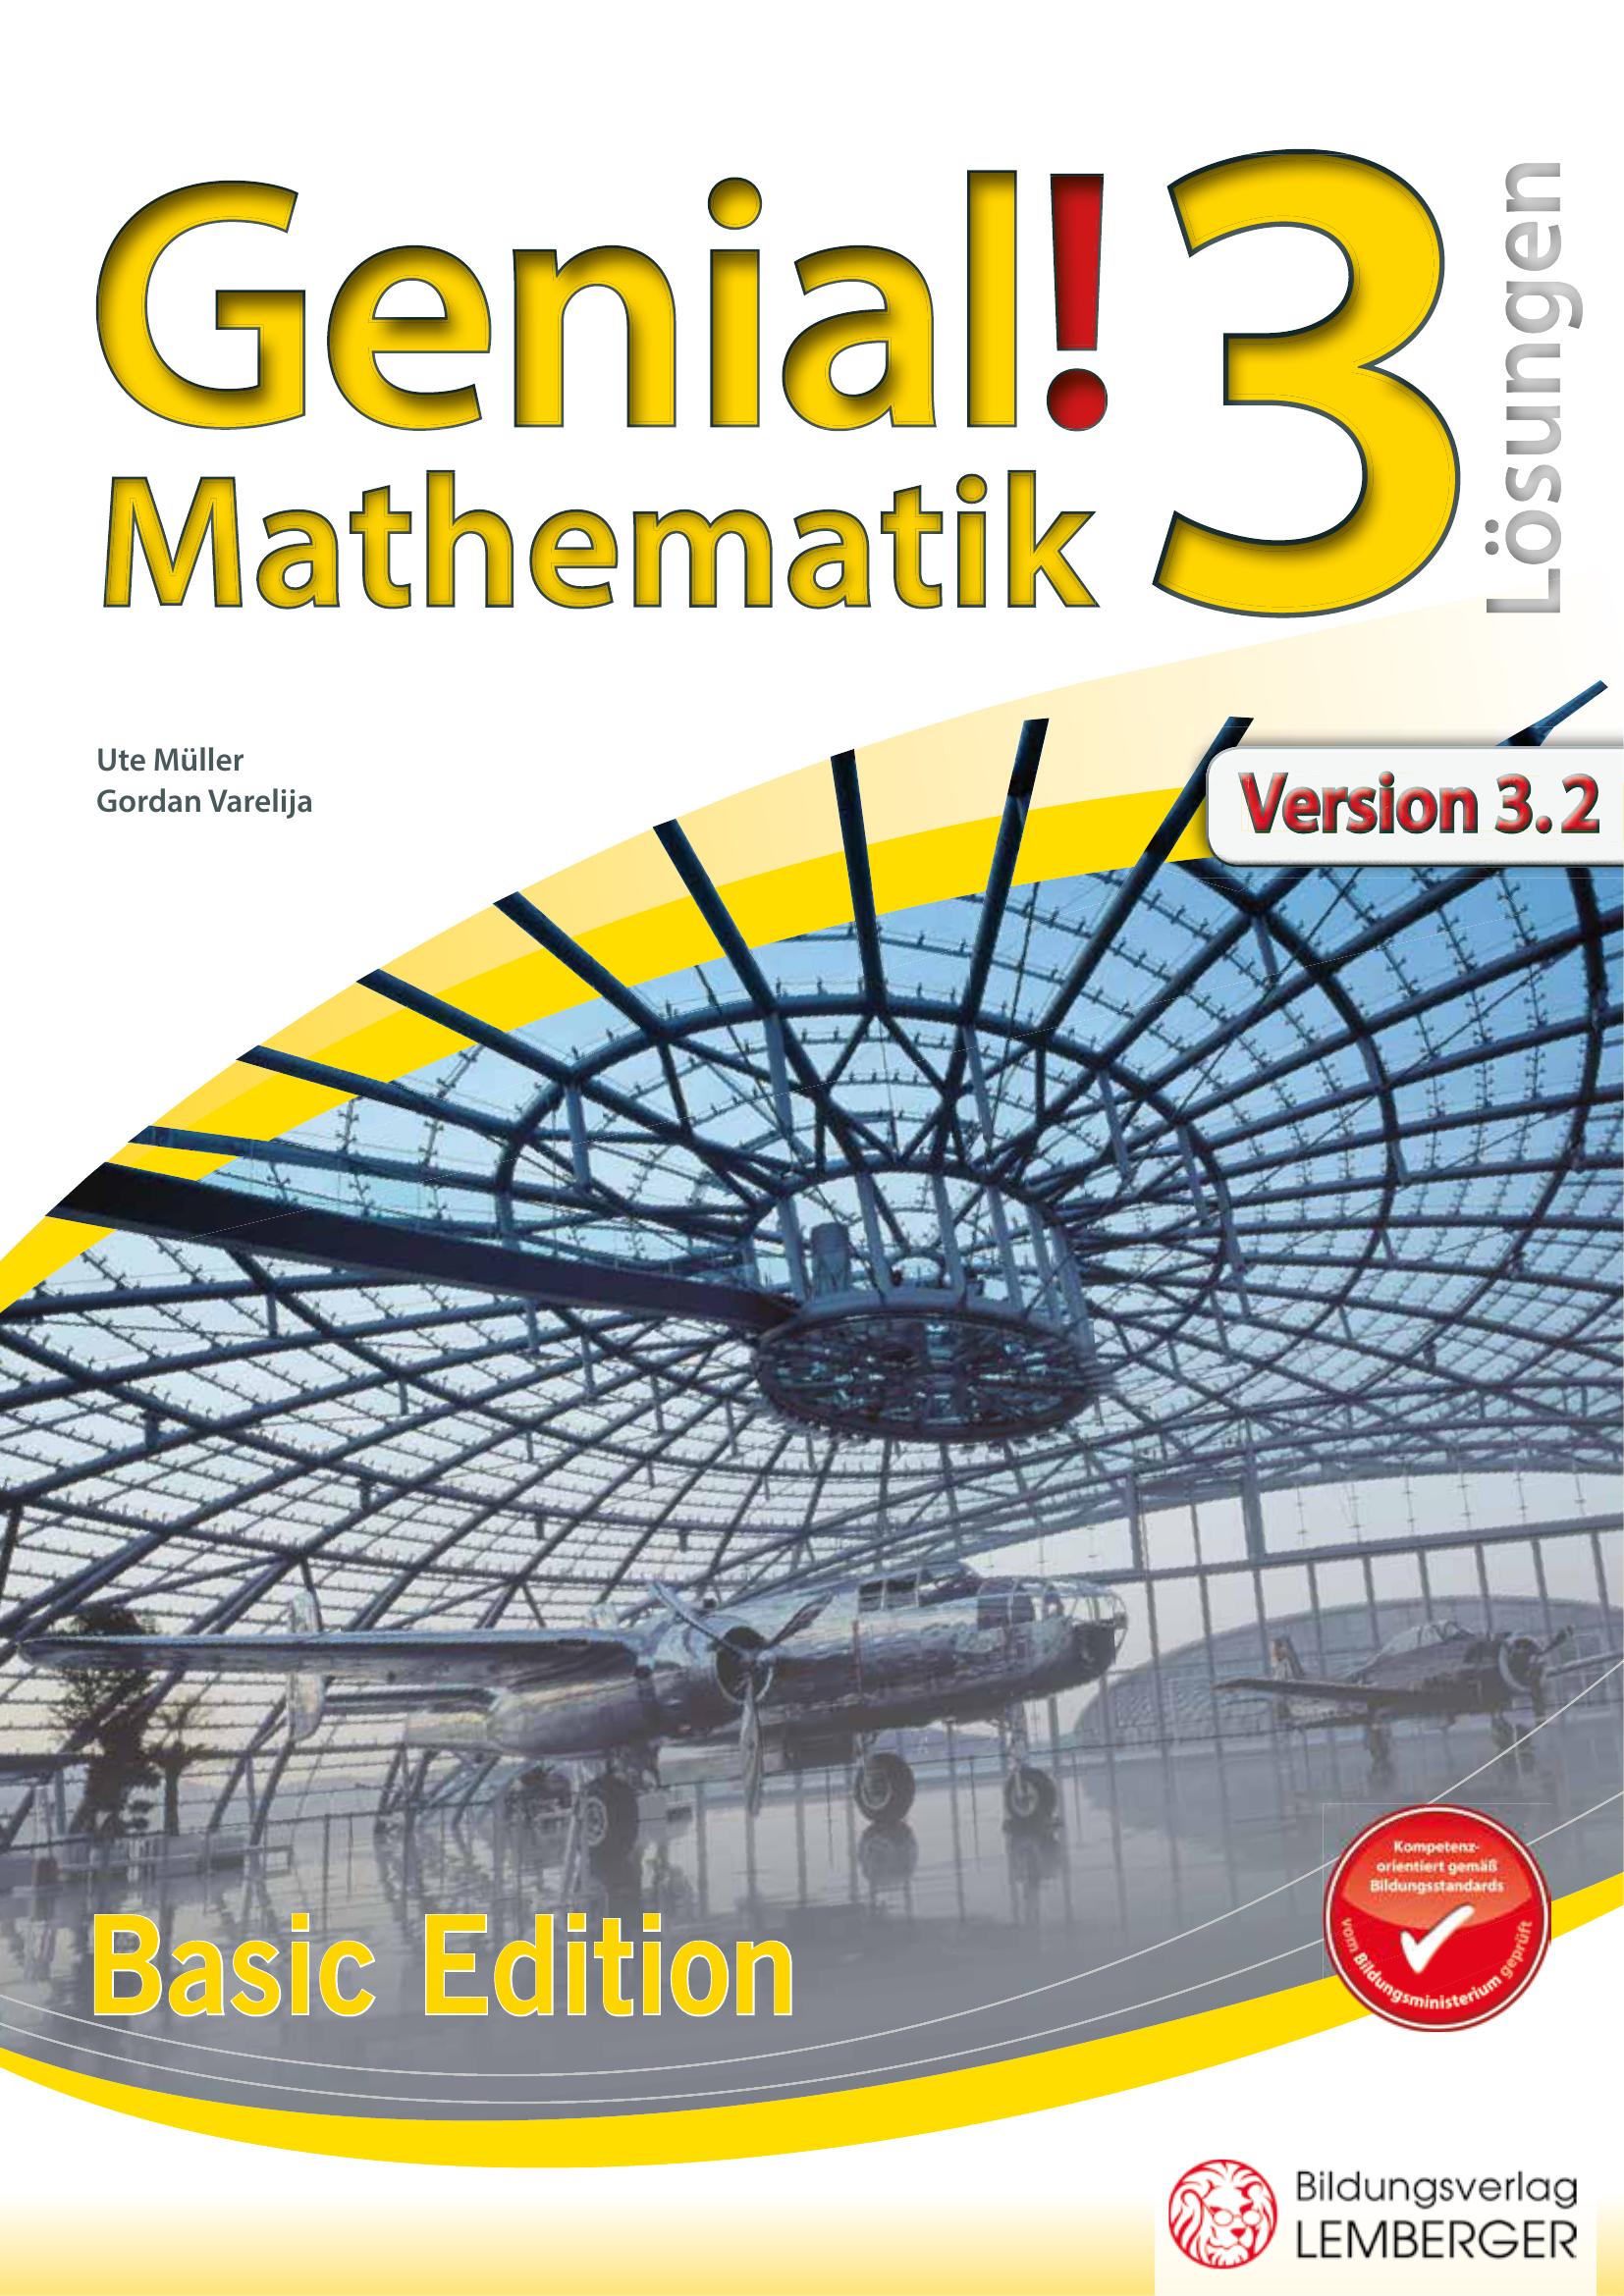 Genial! Mathematik 3 IKT – Übungsteil Basic Edition v3.2 – Lösungen